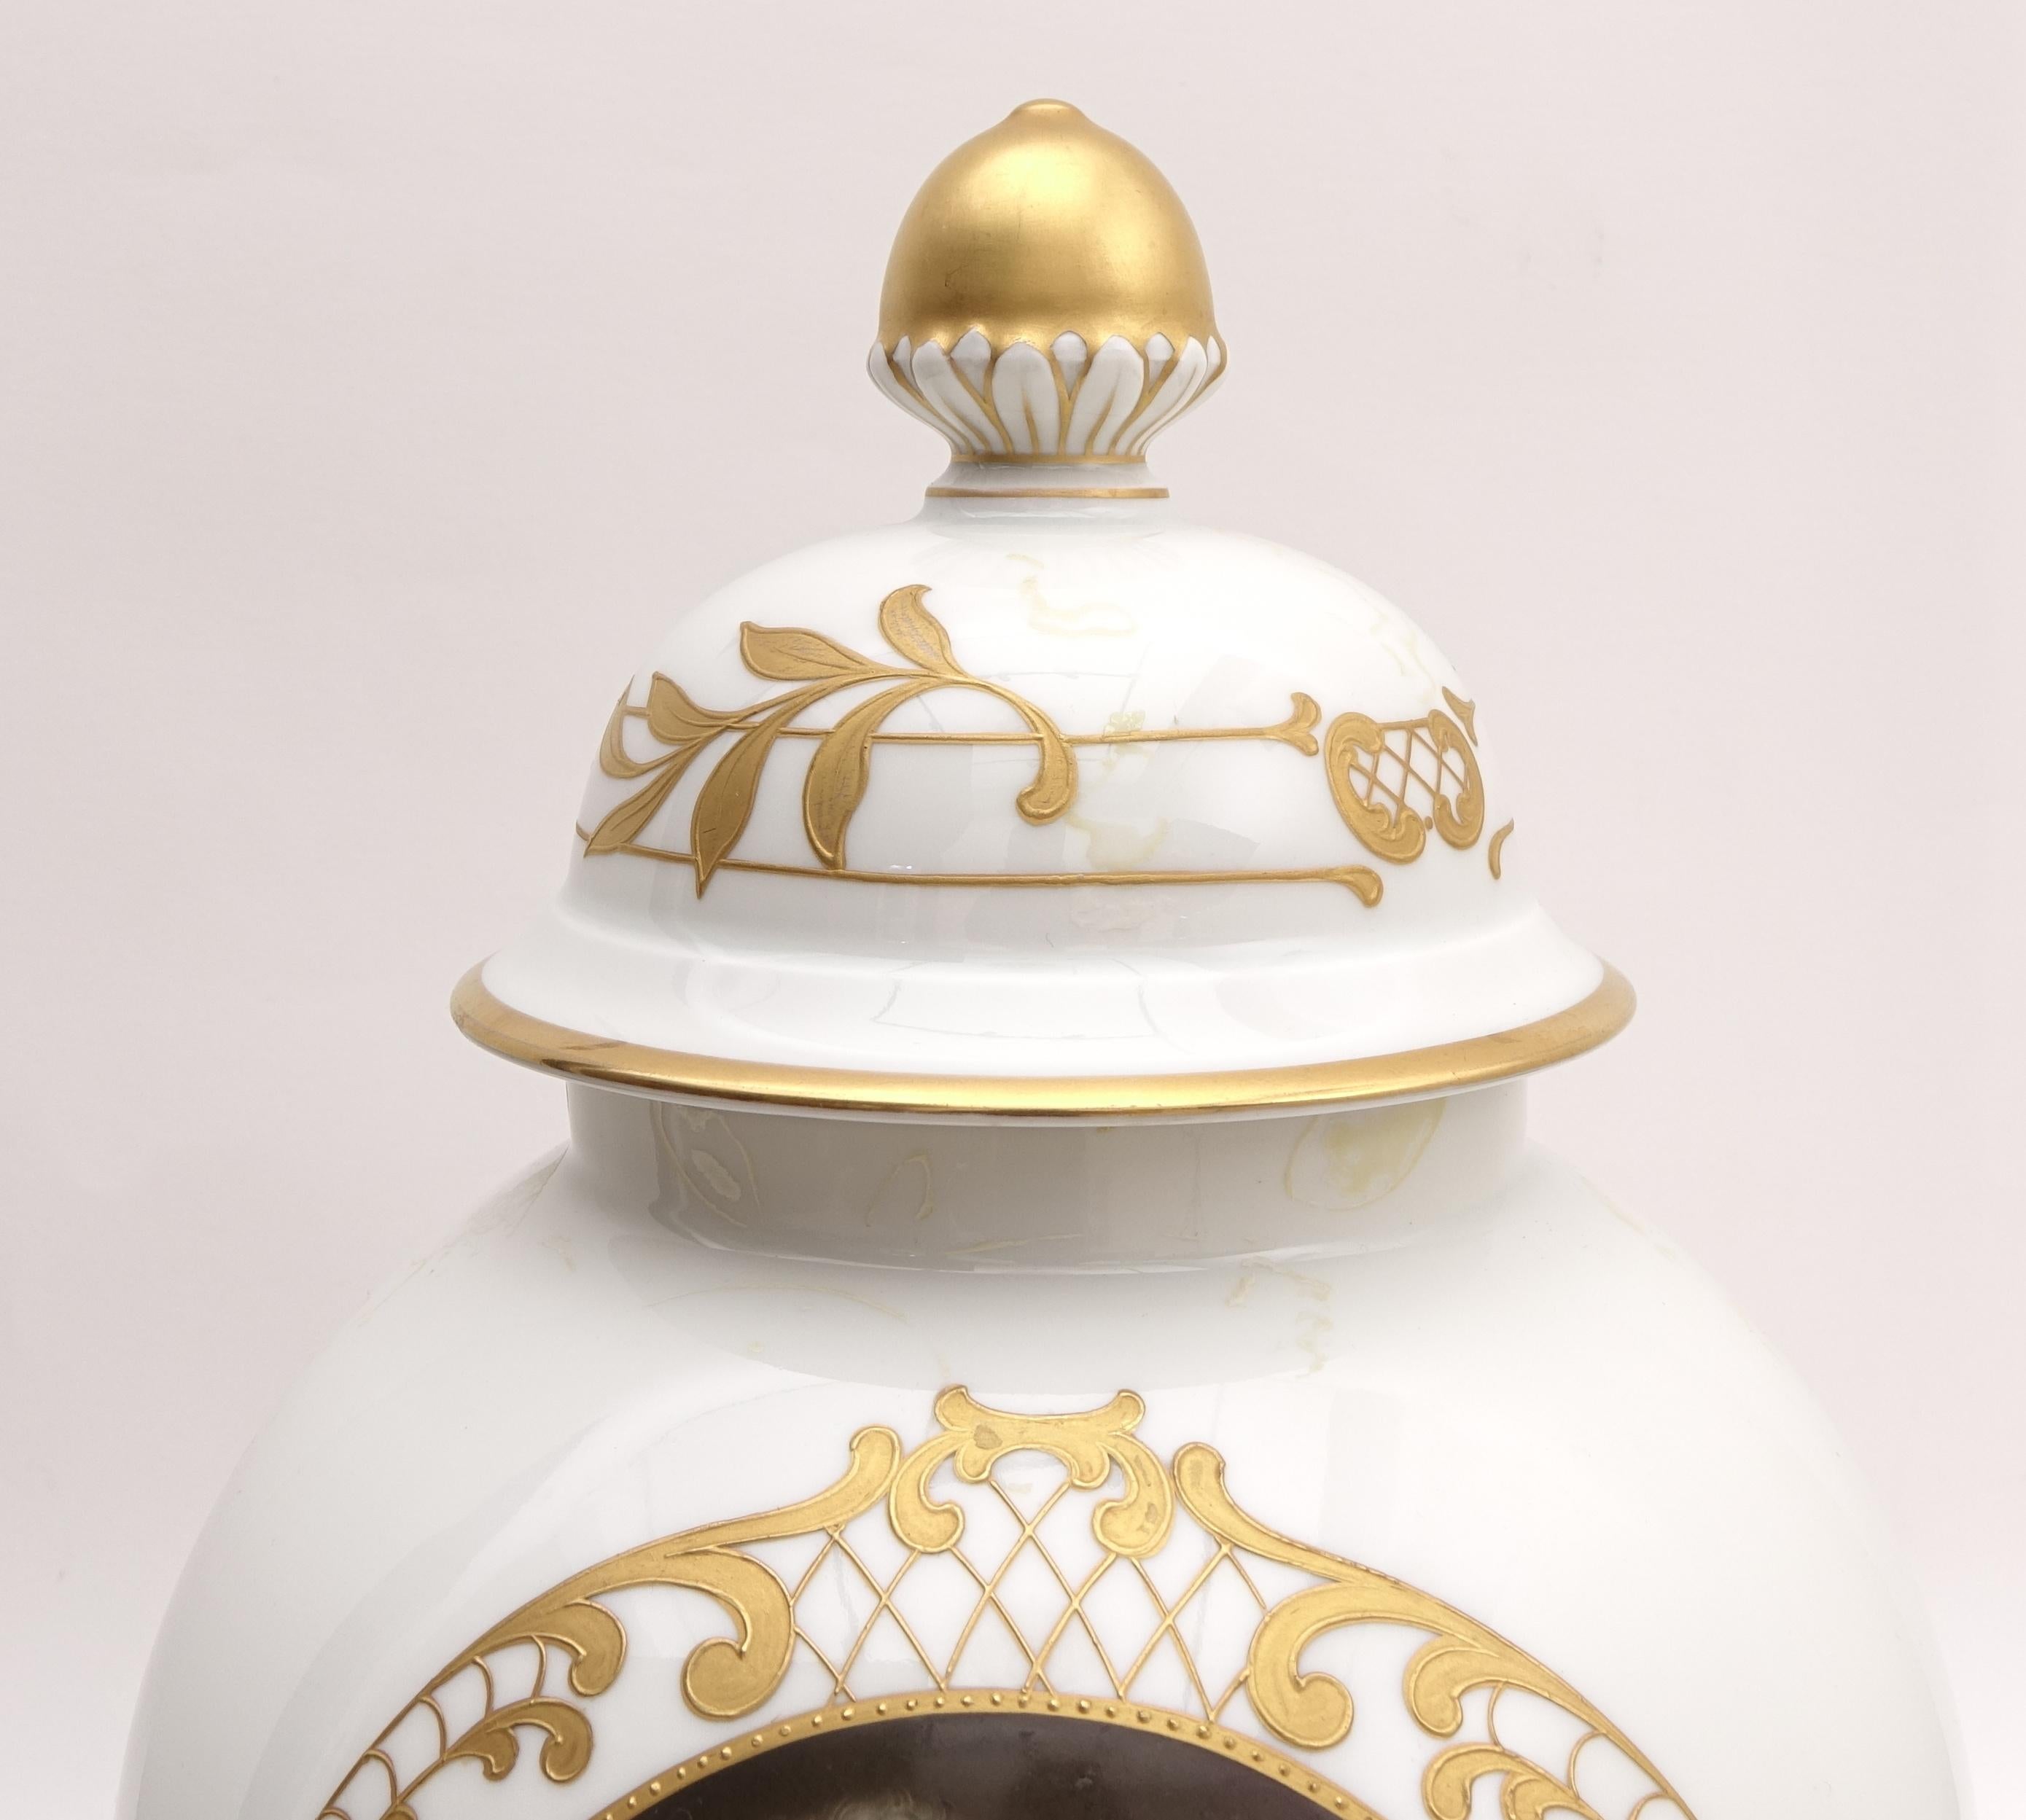 Hand-Painted Porcelain Vase Depicting Maria Antonietta